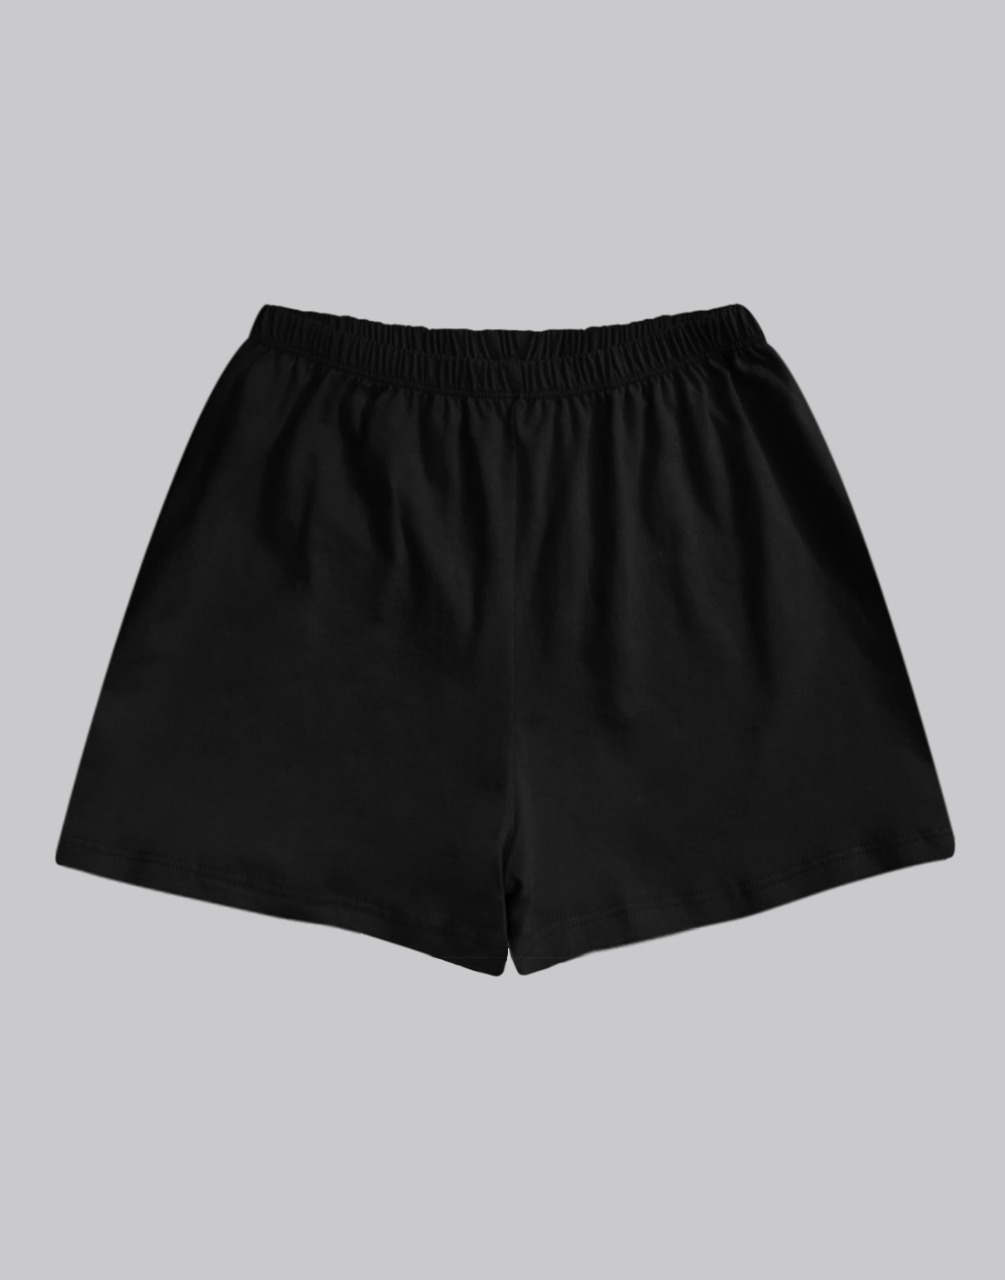 Black Jersey Women's Shorts - A.T.U.N.